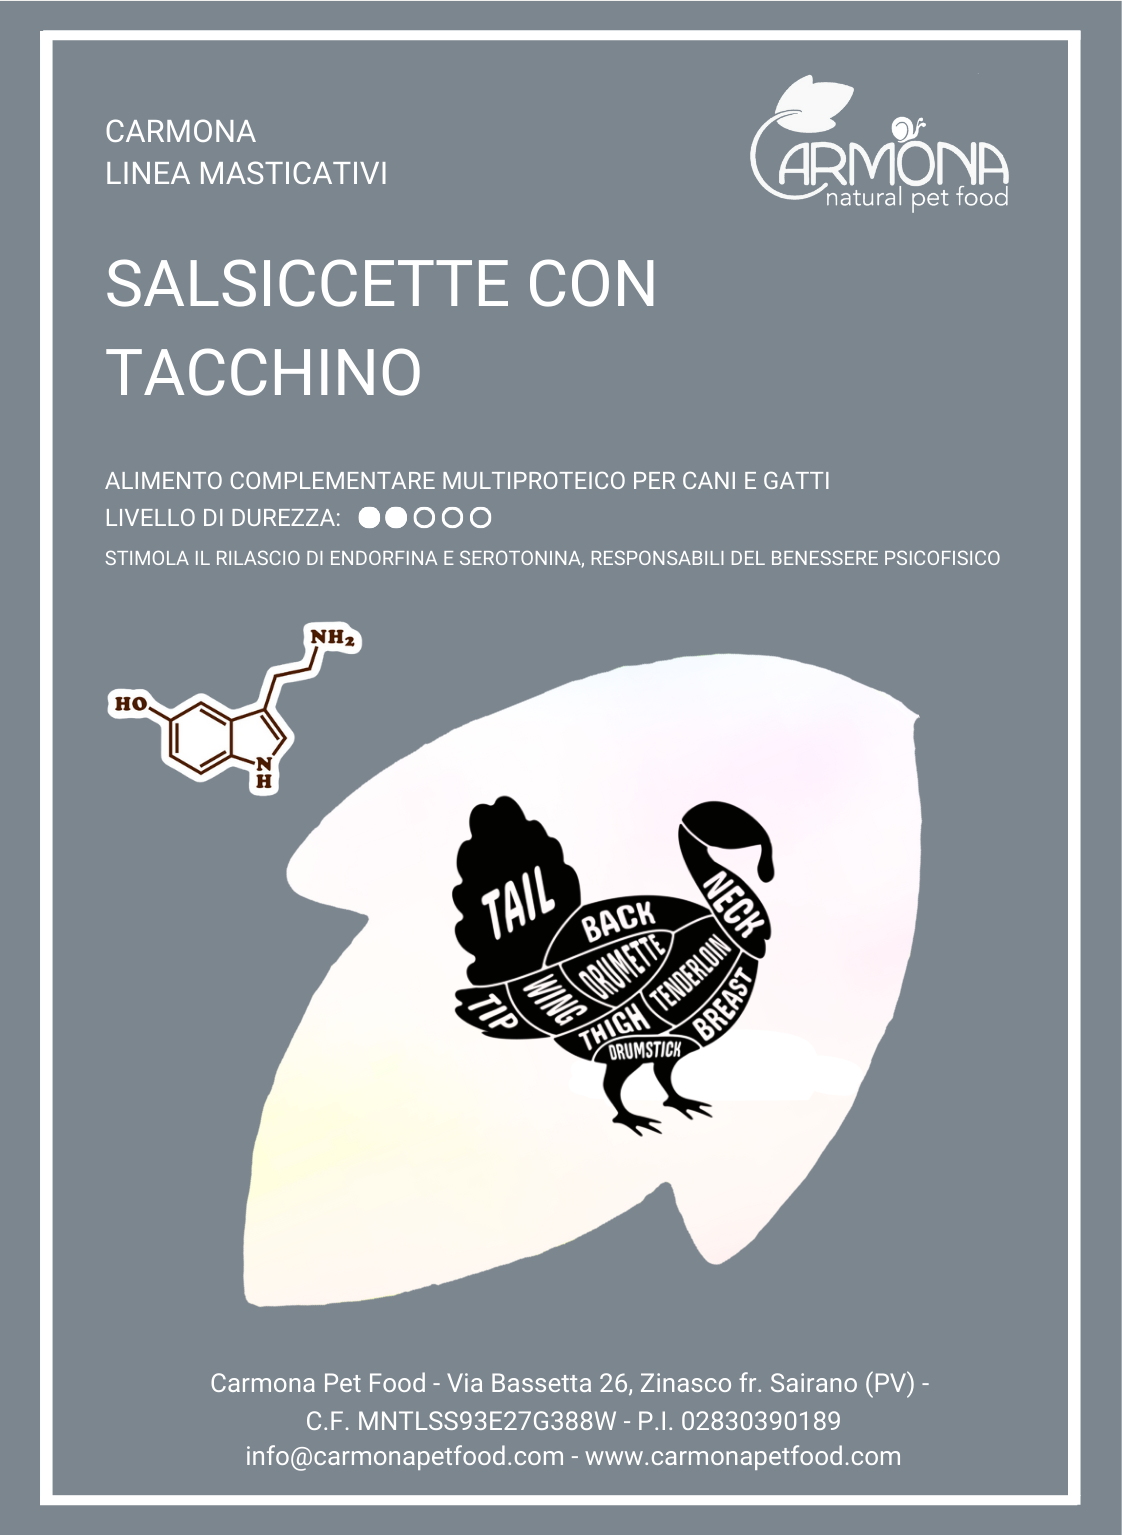 SALSICCETTE CON TACCHINO